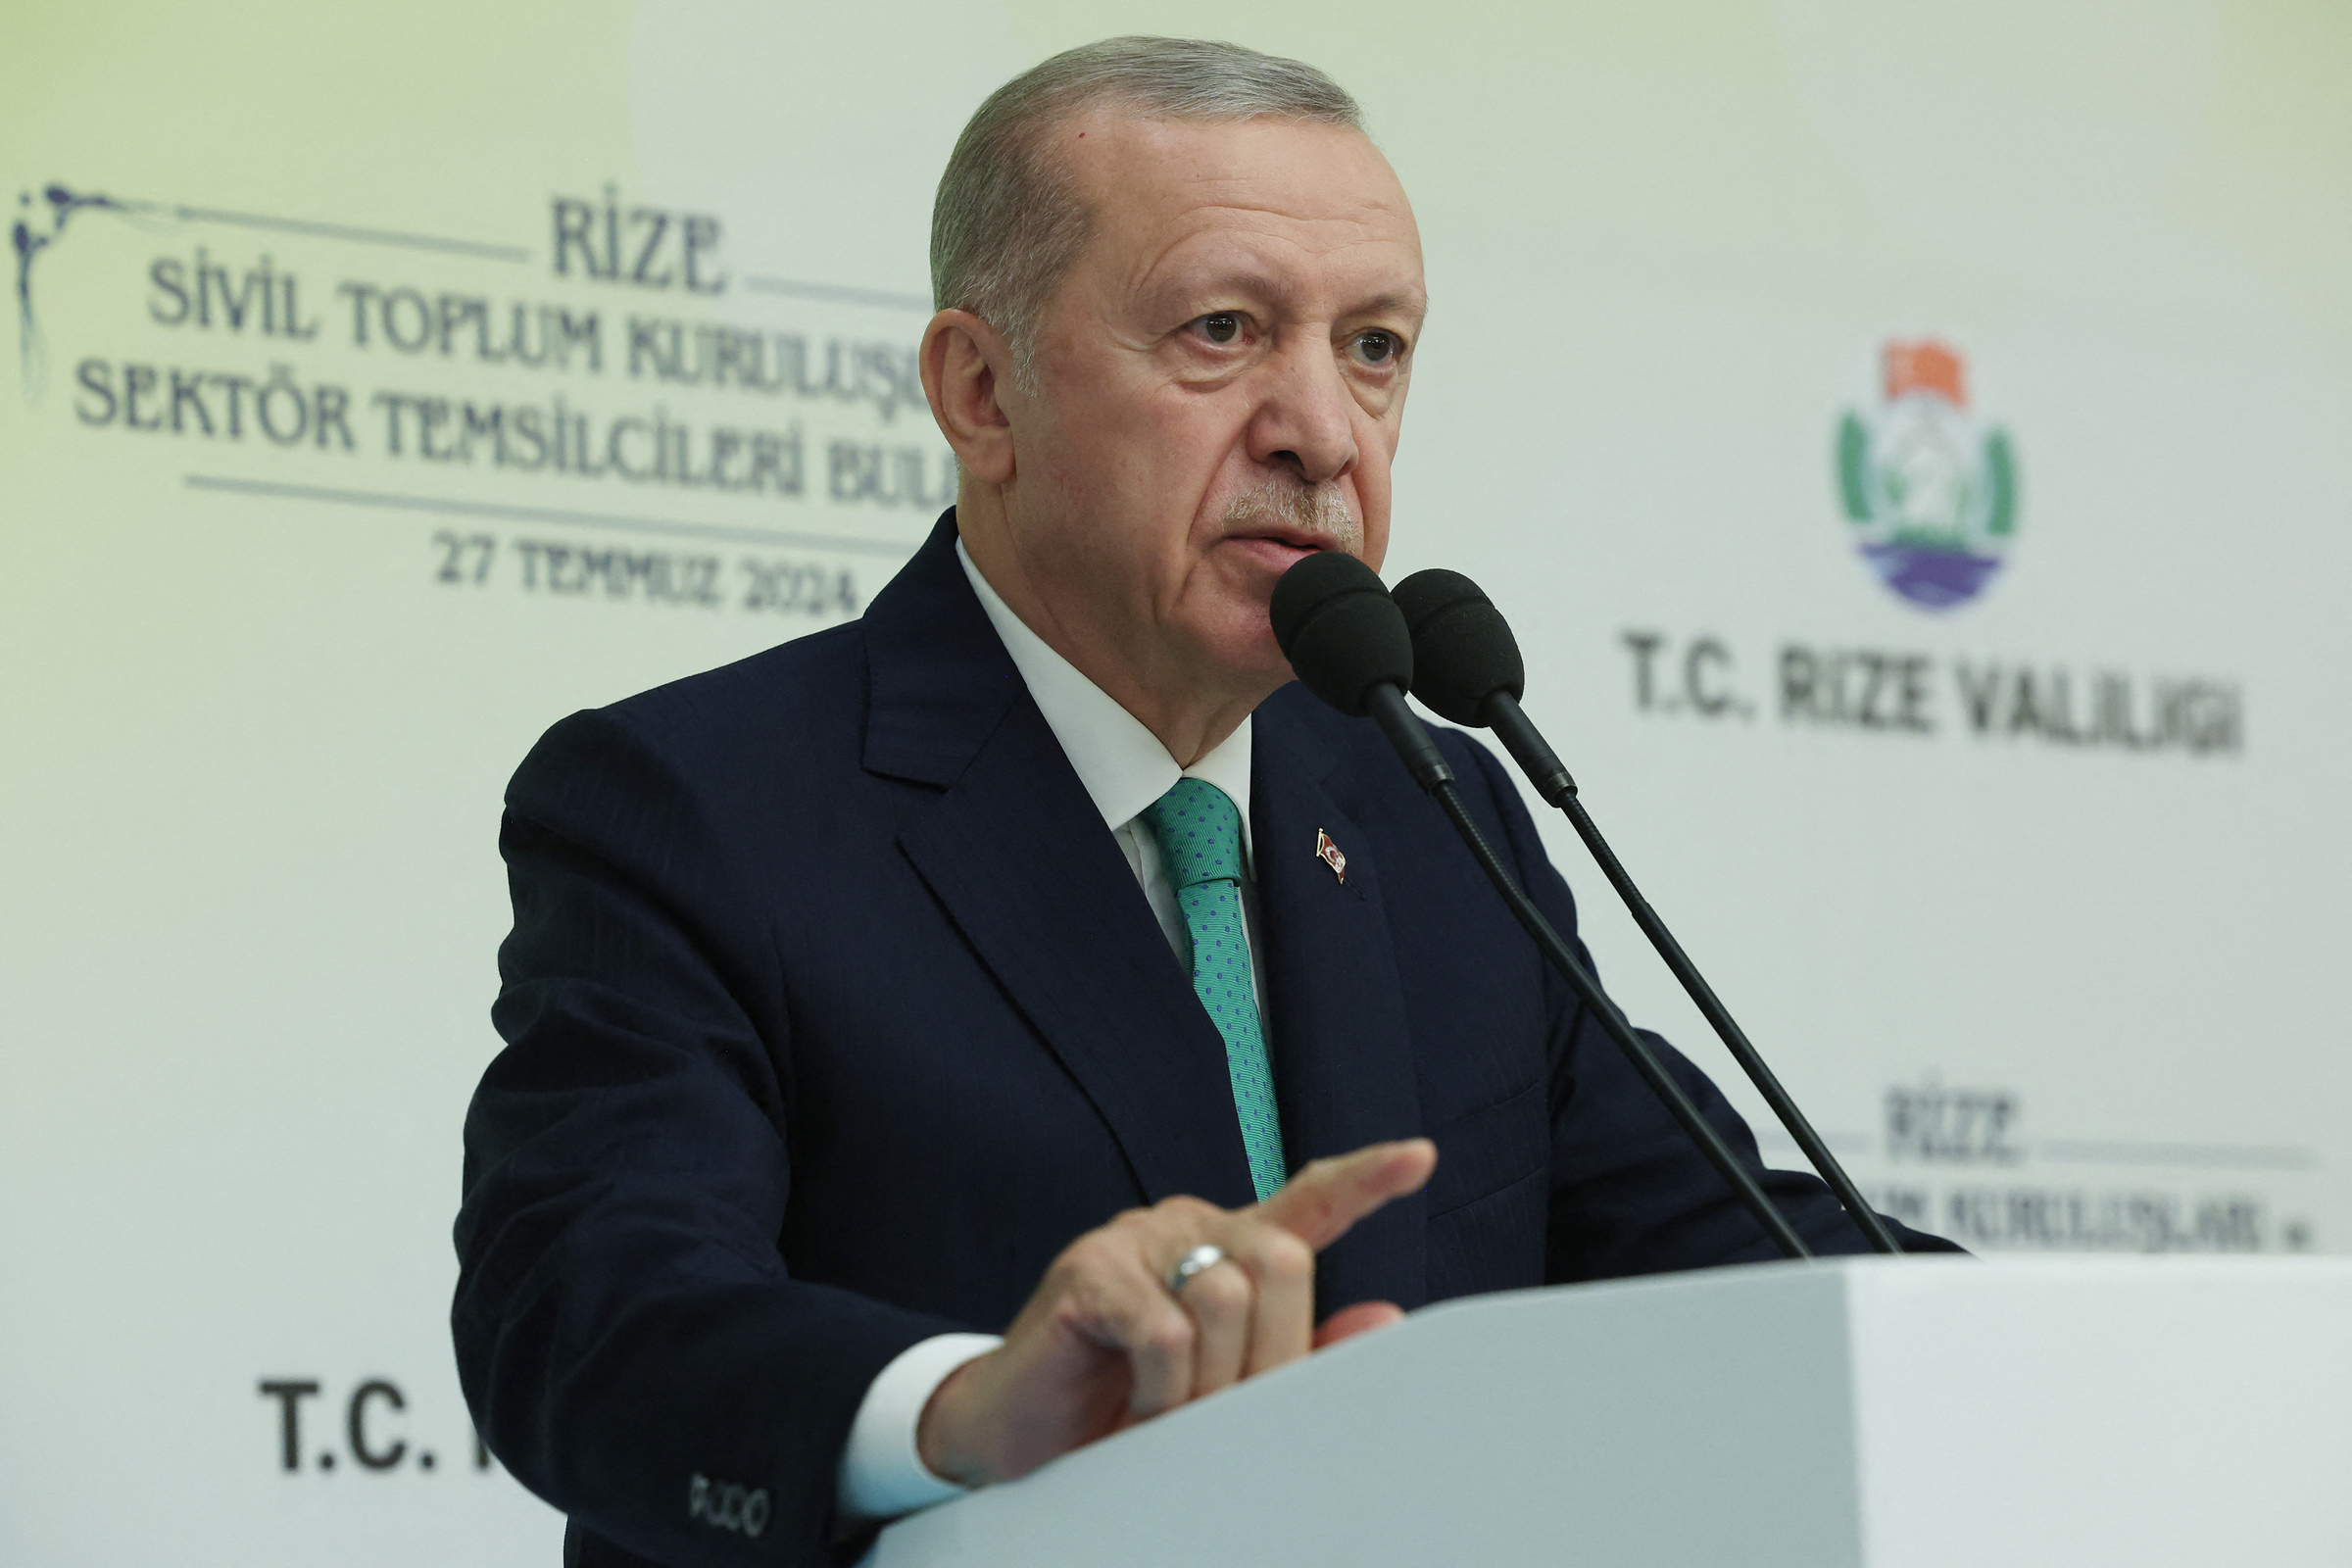 Tổng thống Thổ Nhĩ Kỳ dọa can thiệp vào Israel